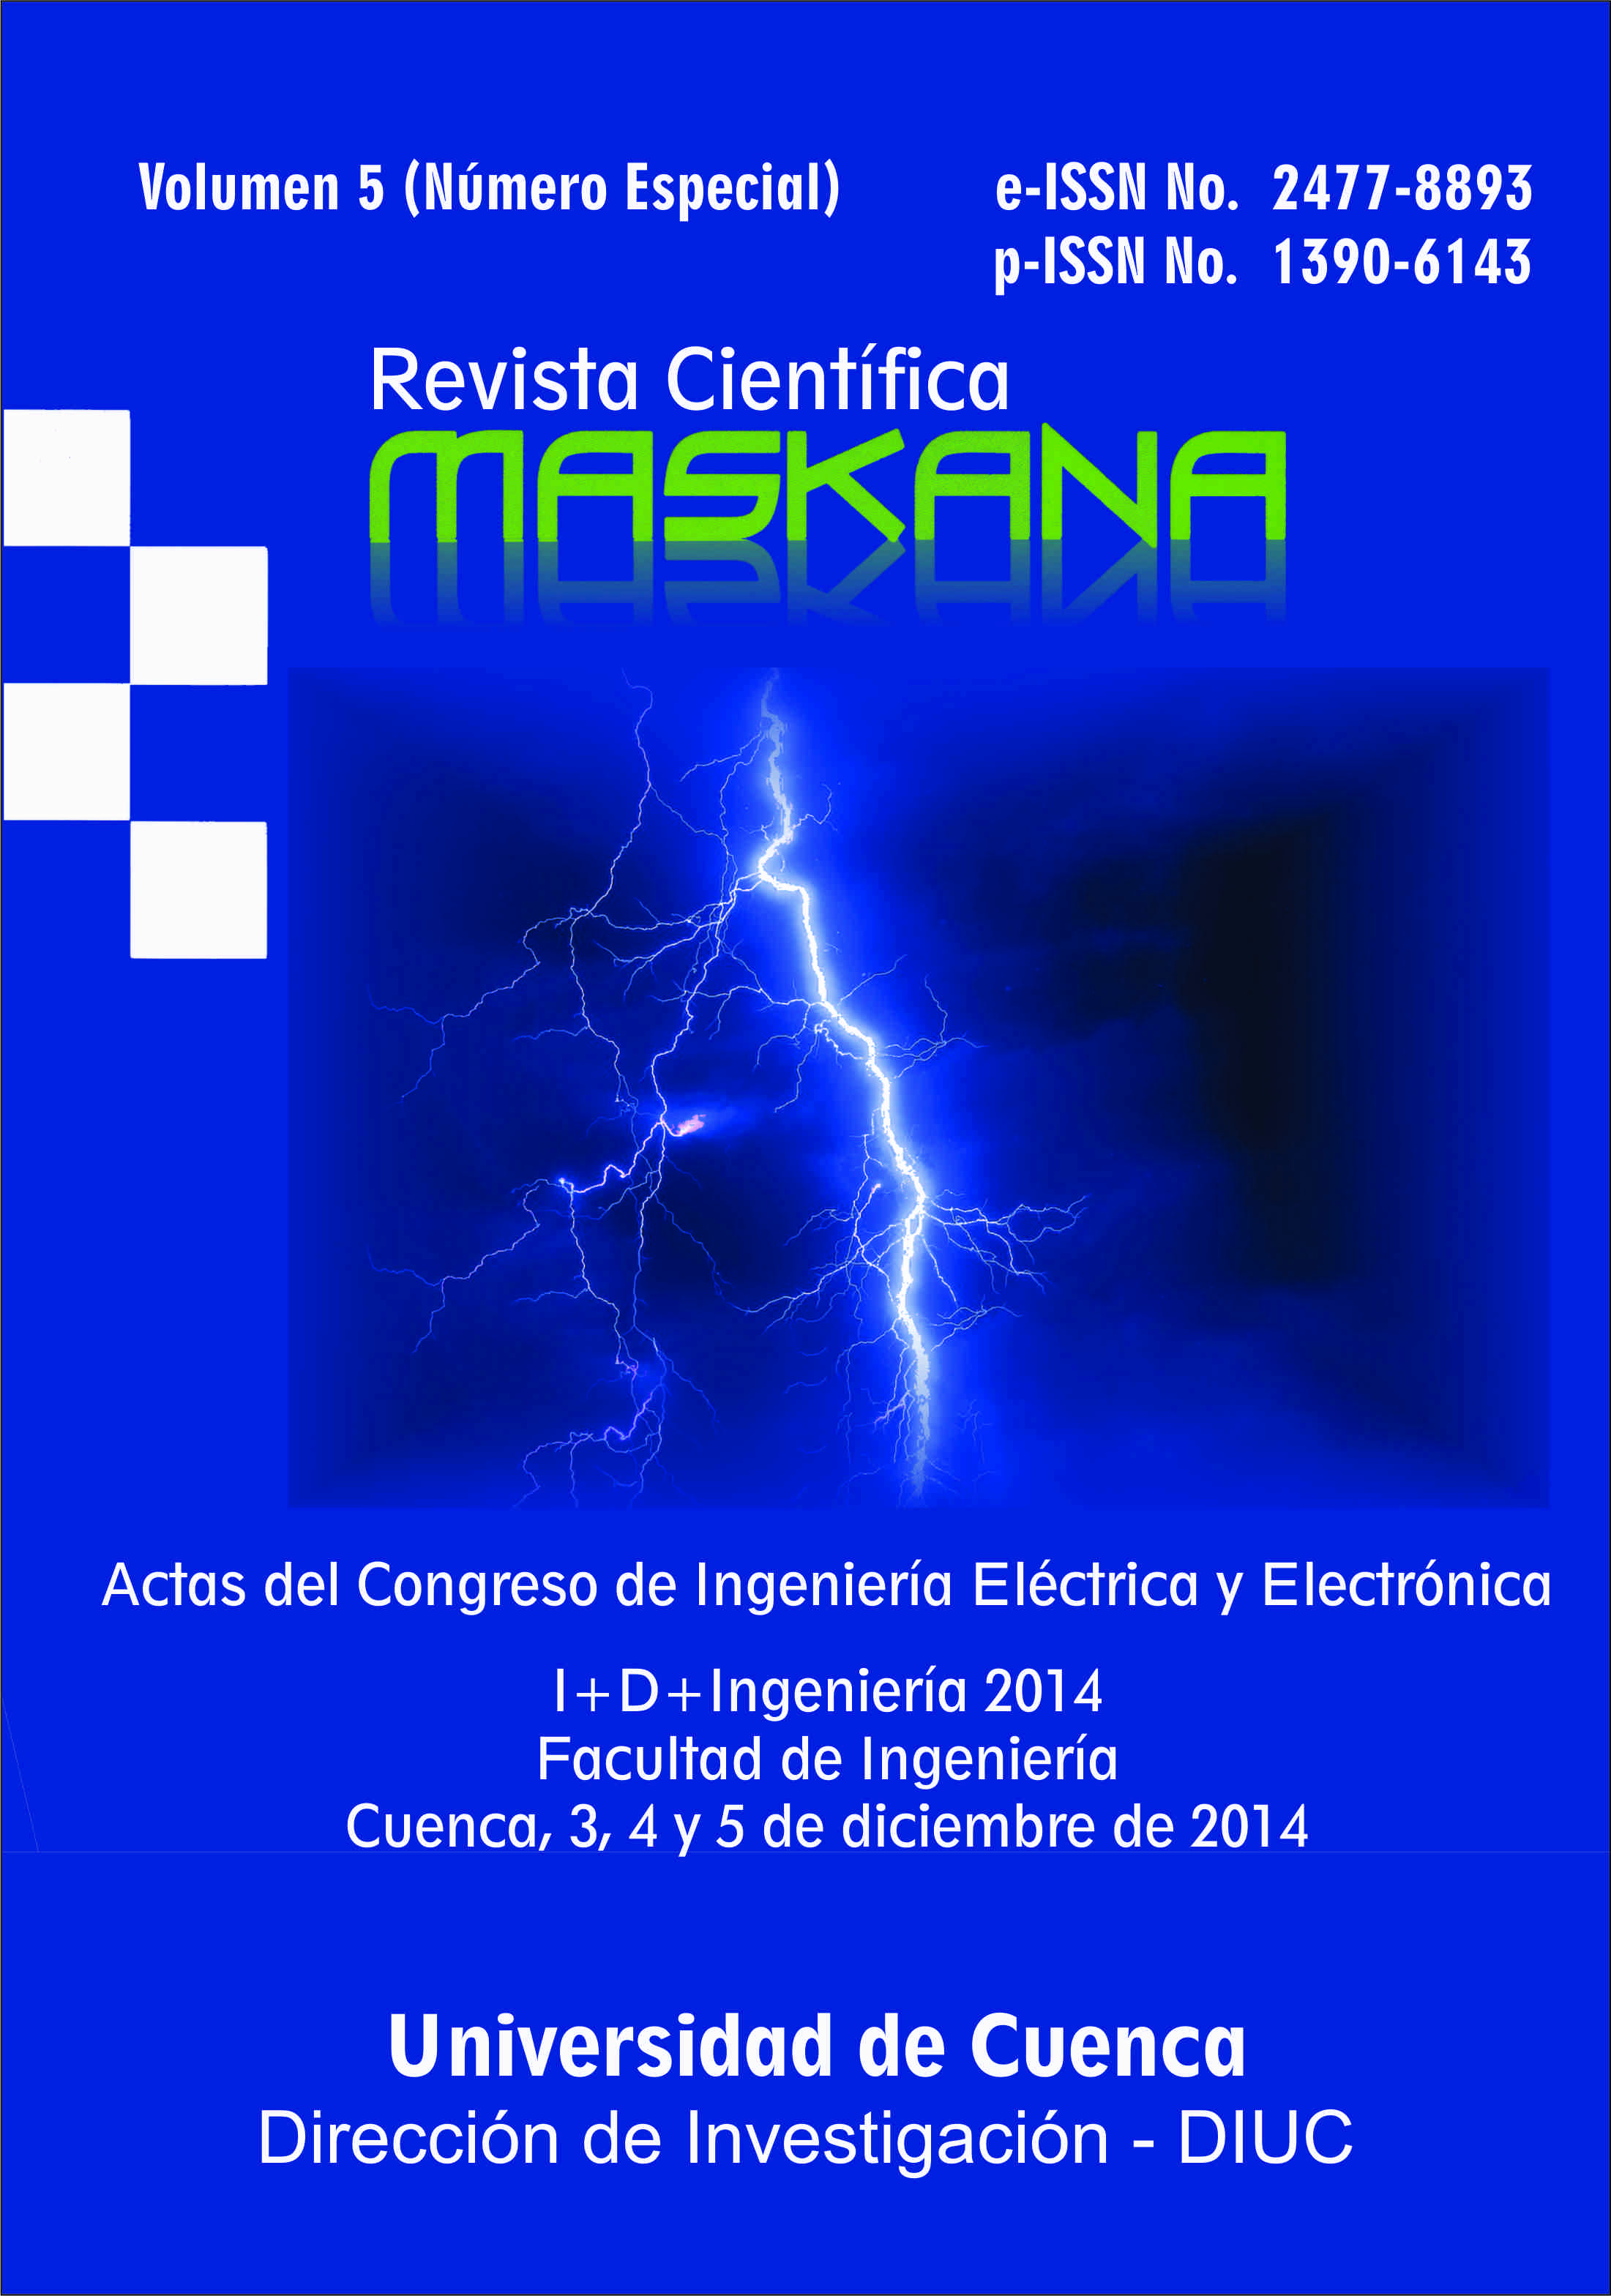 					Ver Vol. 5 (2014): Actas del Congreso de Ingeniería Eléctrica y Electrónica IEE
				